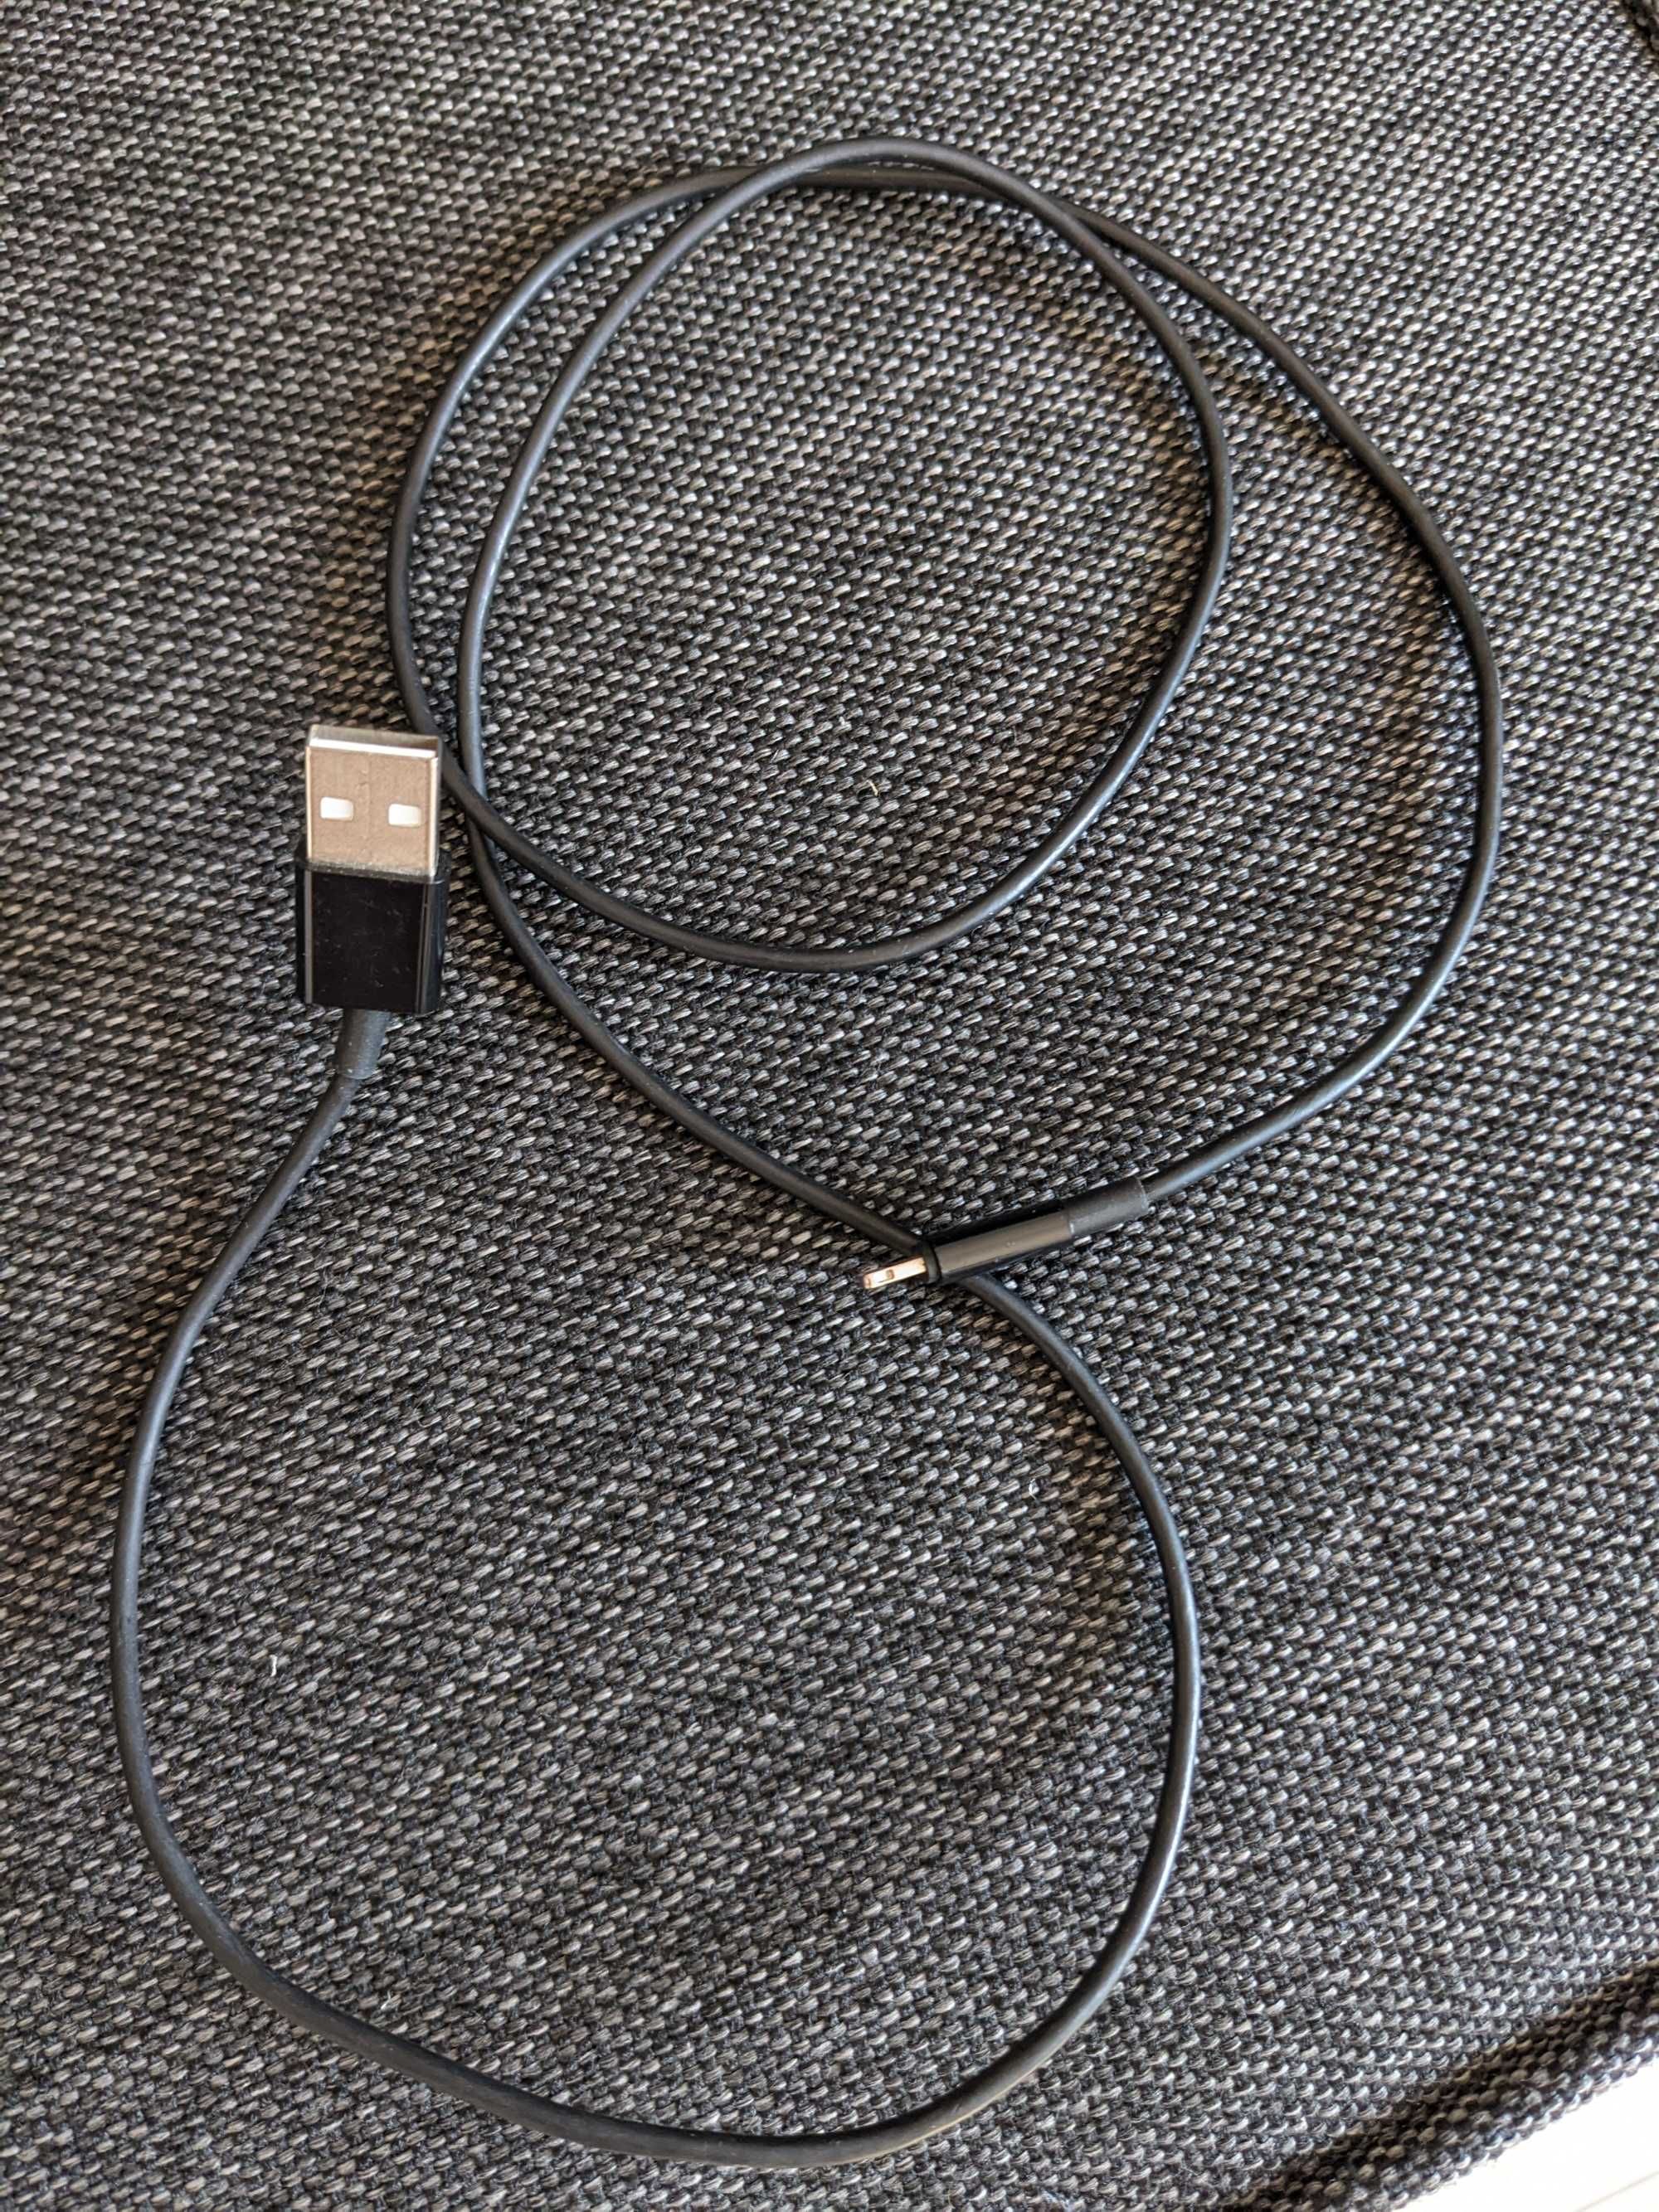 czarny kabel USB do iPhone